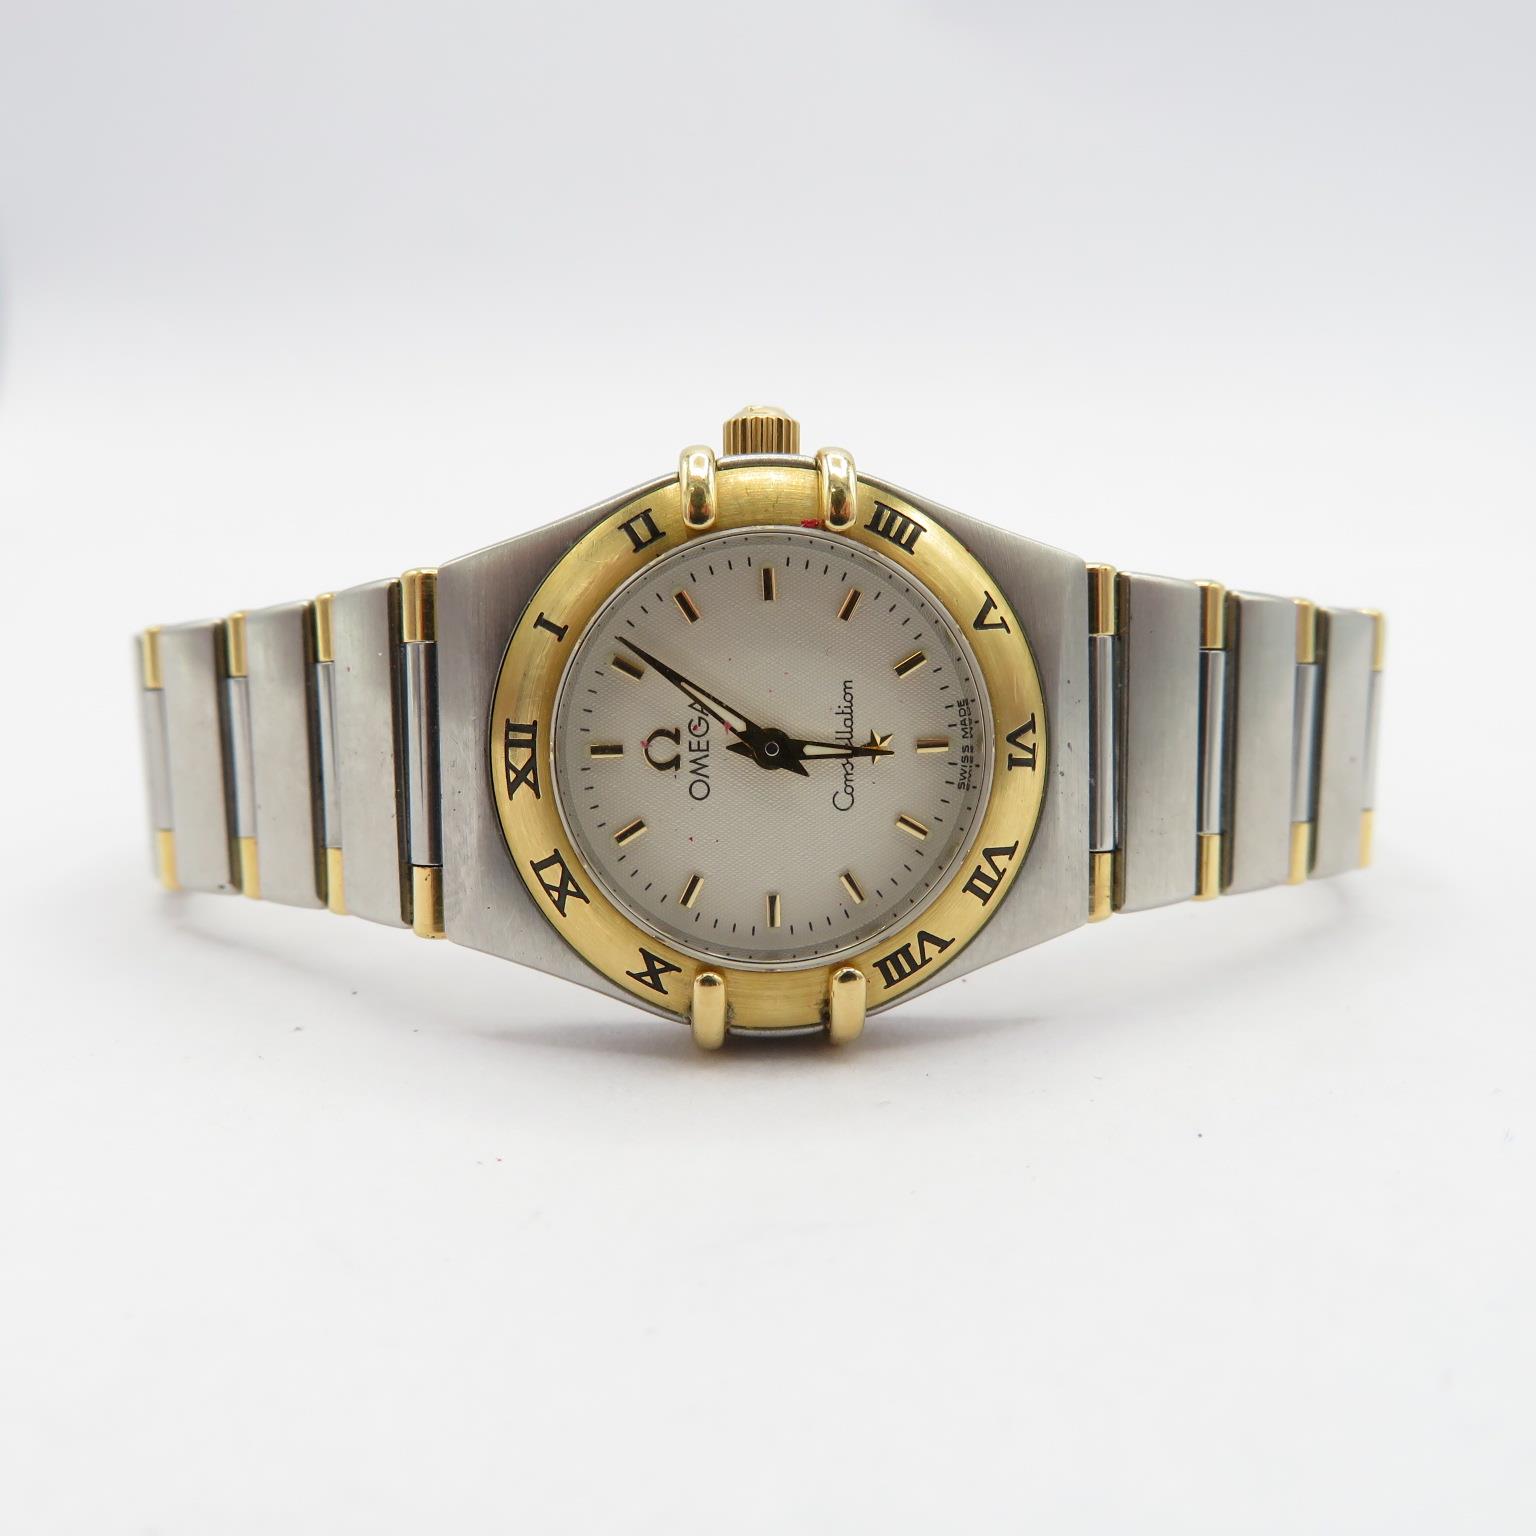 Omega Constellation Ladies steel and 18 ct gold quartz wristwatch requires service/repair requires - Image 3 of 7